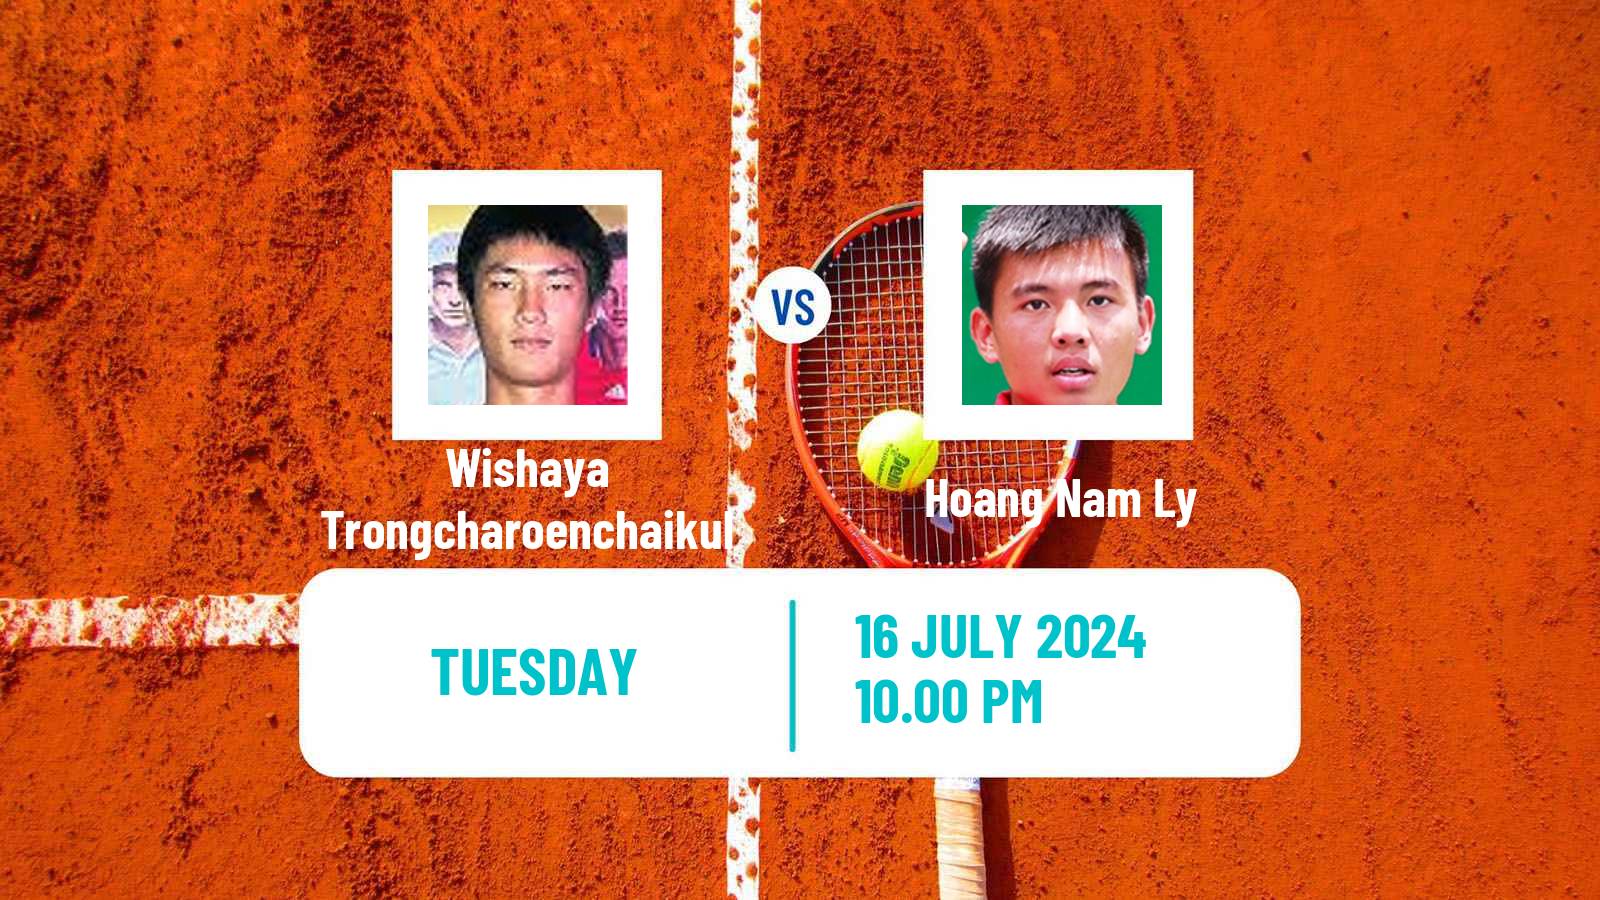 Tennis ITF M25 Tianjin 2 Men Wishaya Trongcharoenchaikul - Hoang Nam Ly